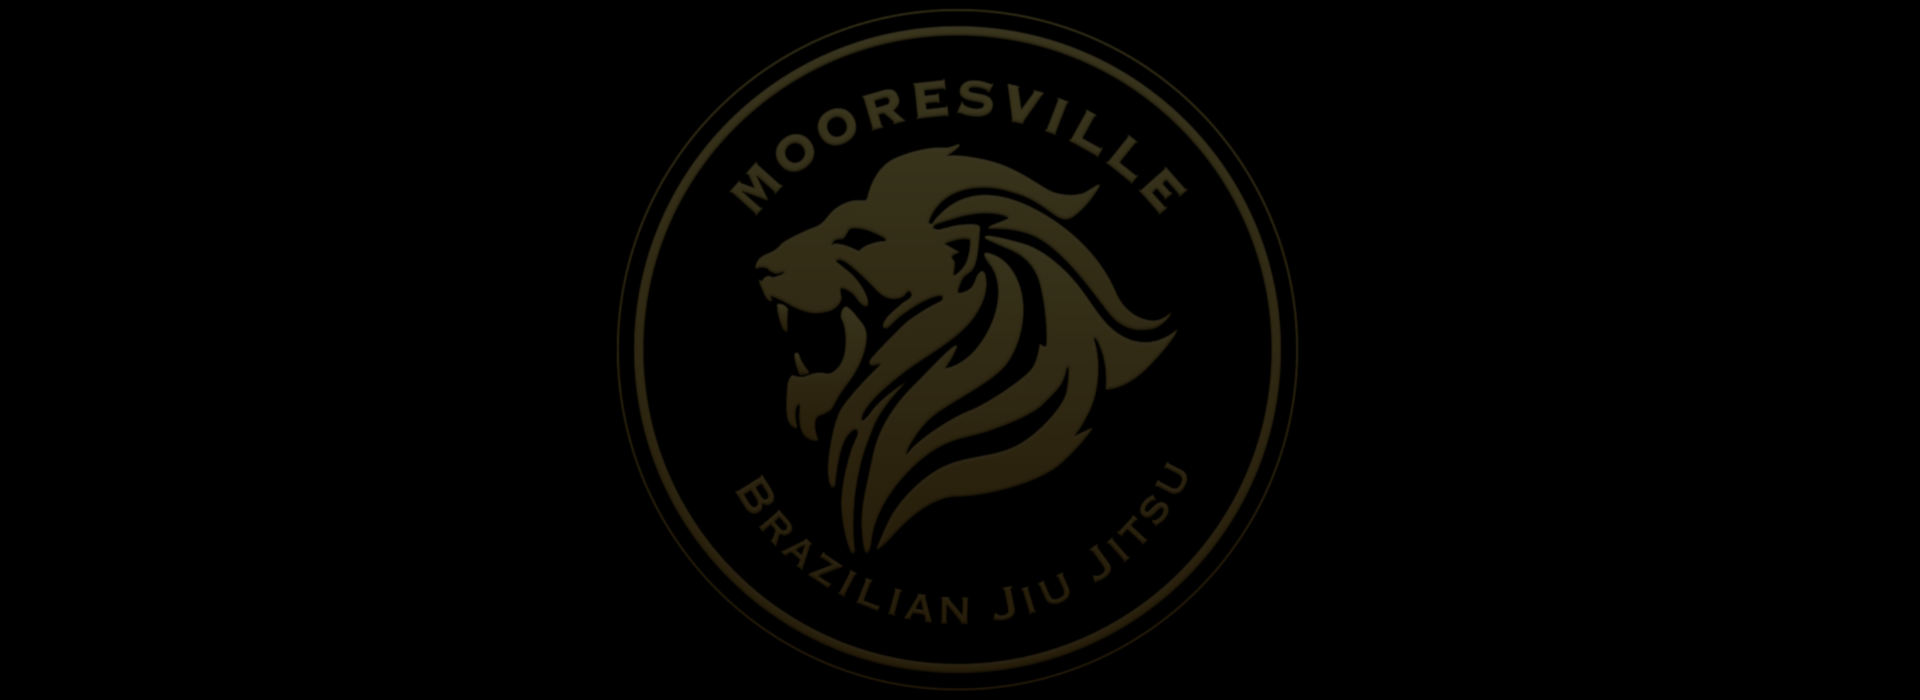 Mooresville Brazilian Jiu Jitsu photo